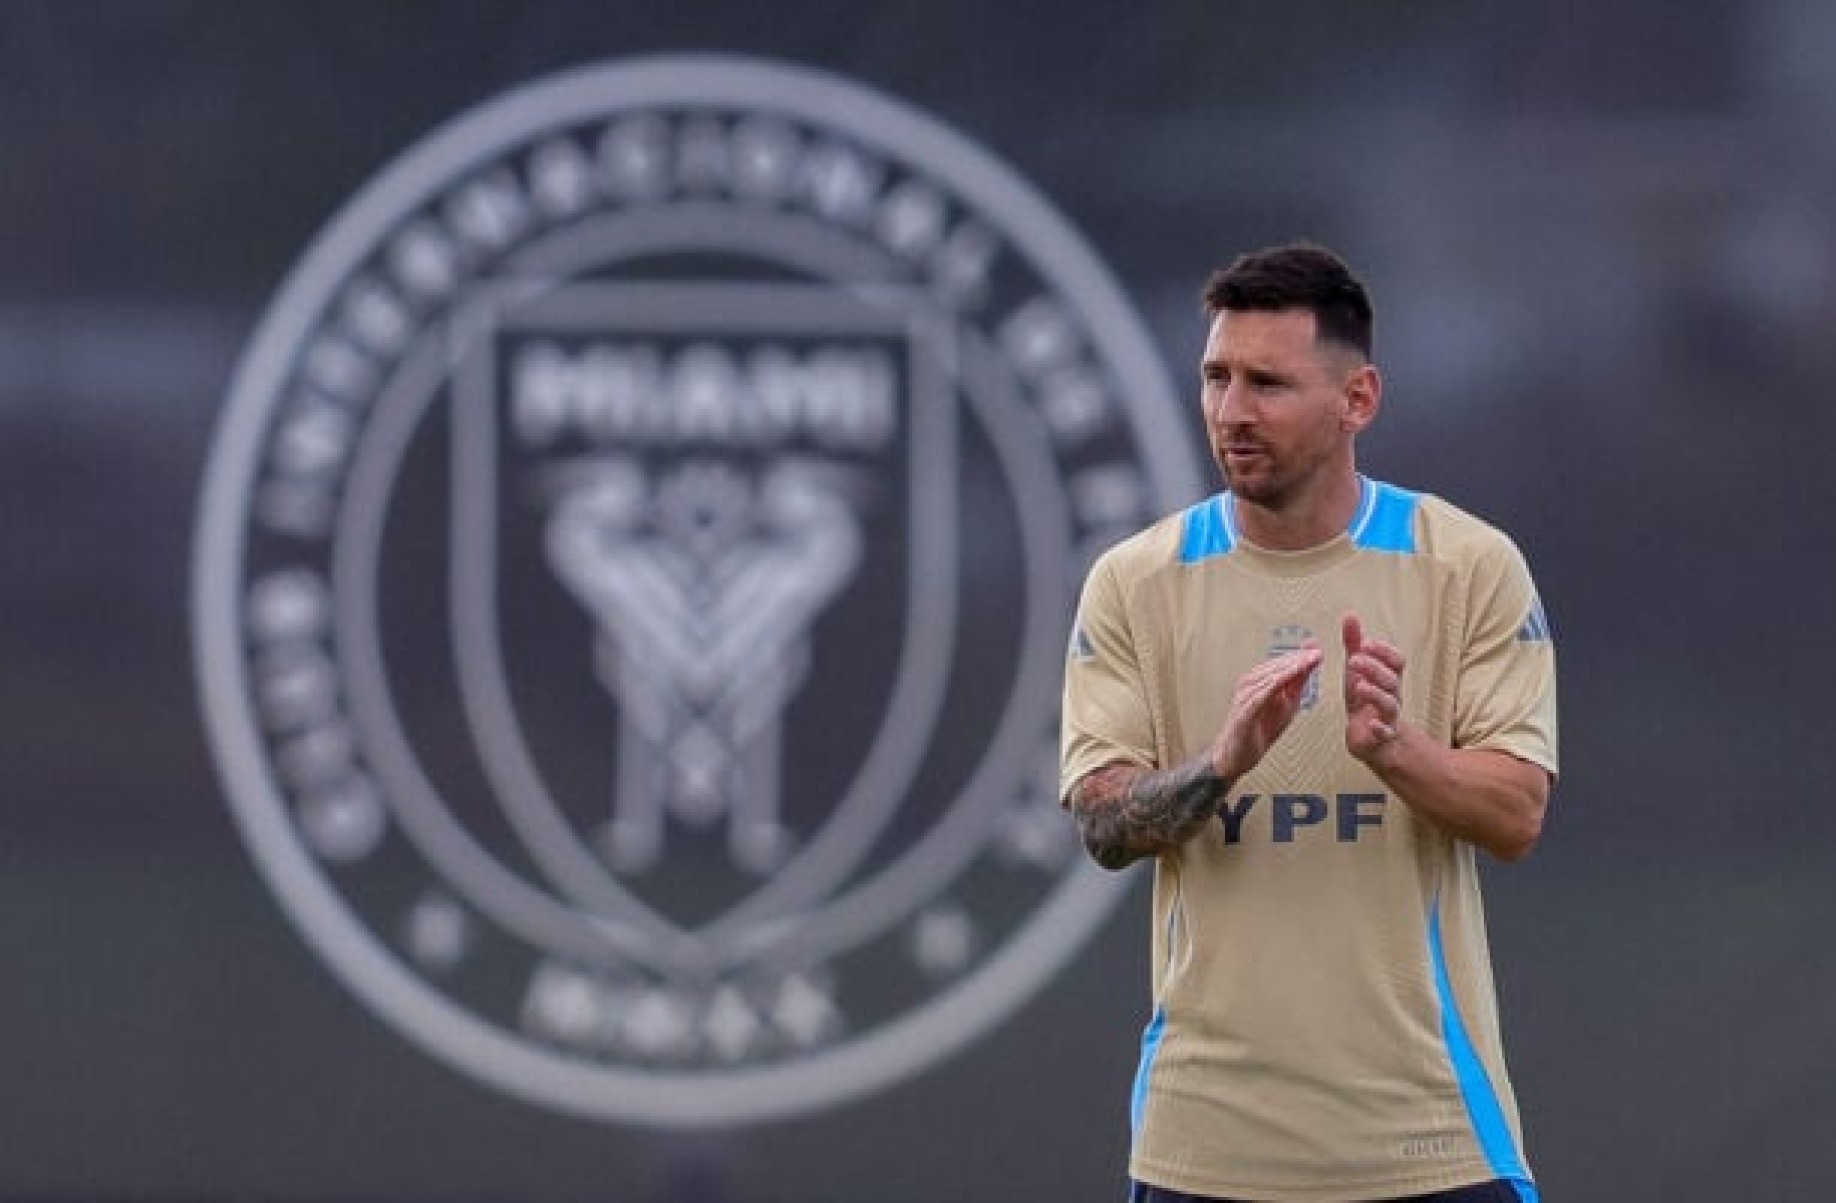 Messi abre o jogo sobre disputar as Olimpíadas pela Argentina